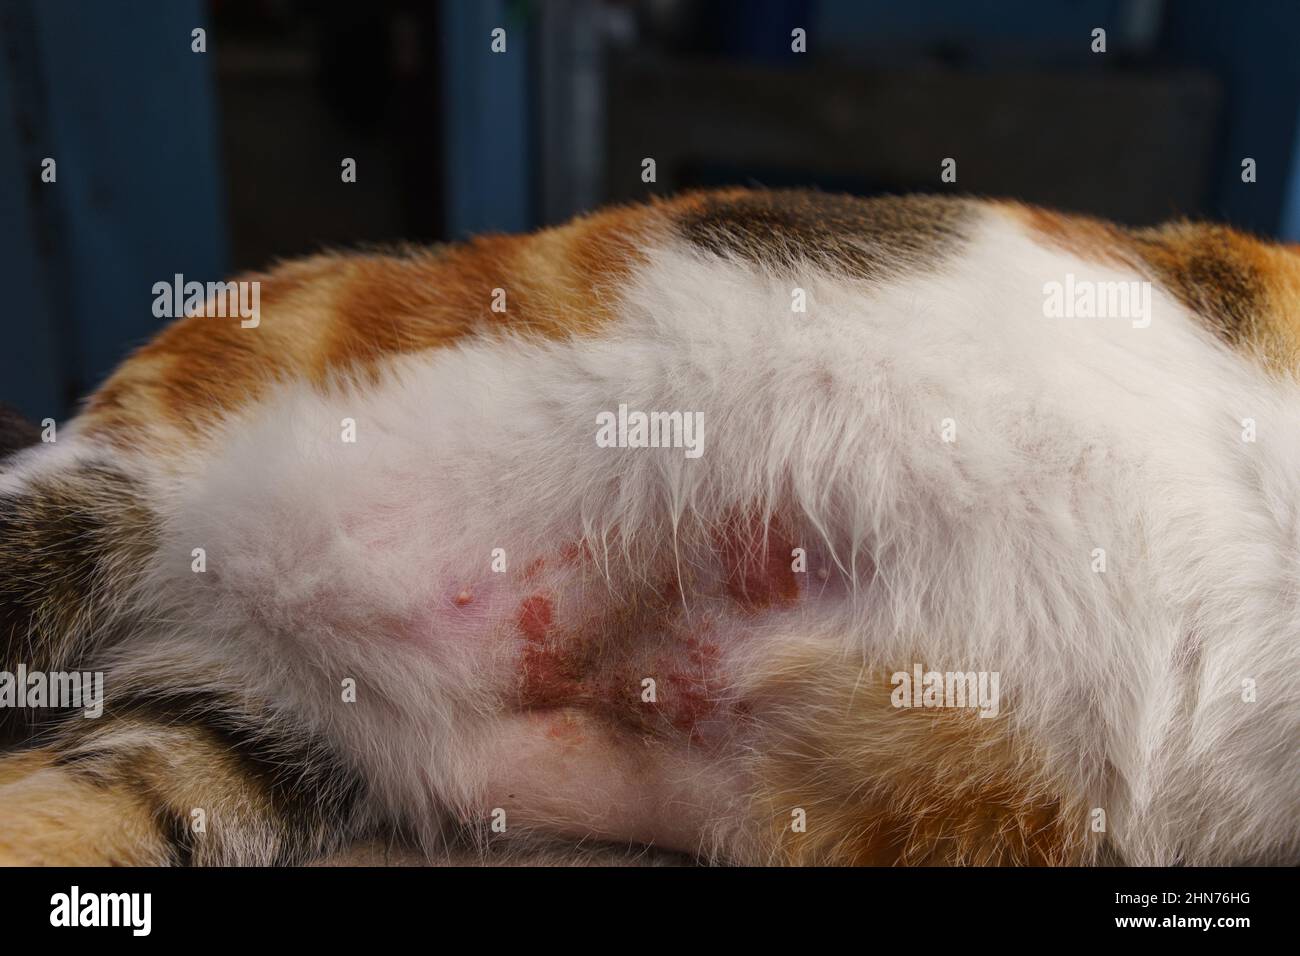 Vientre de un gato calico con una infección de la piel que causó la pérdida del cabello. Posiblemente se propague por mordeduras de gato. Foto de stock